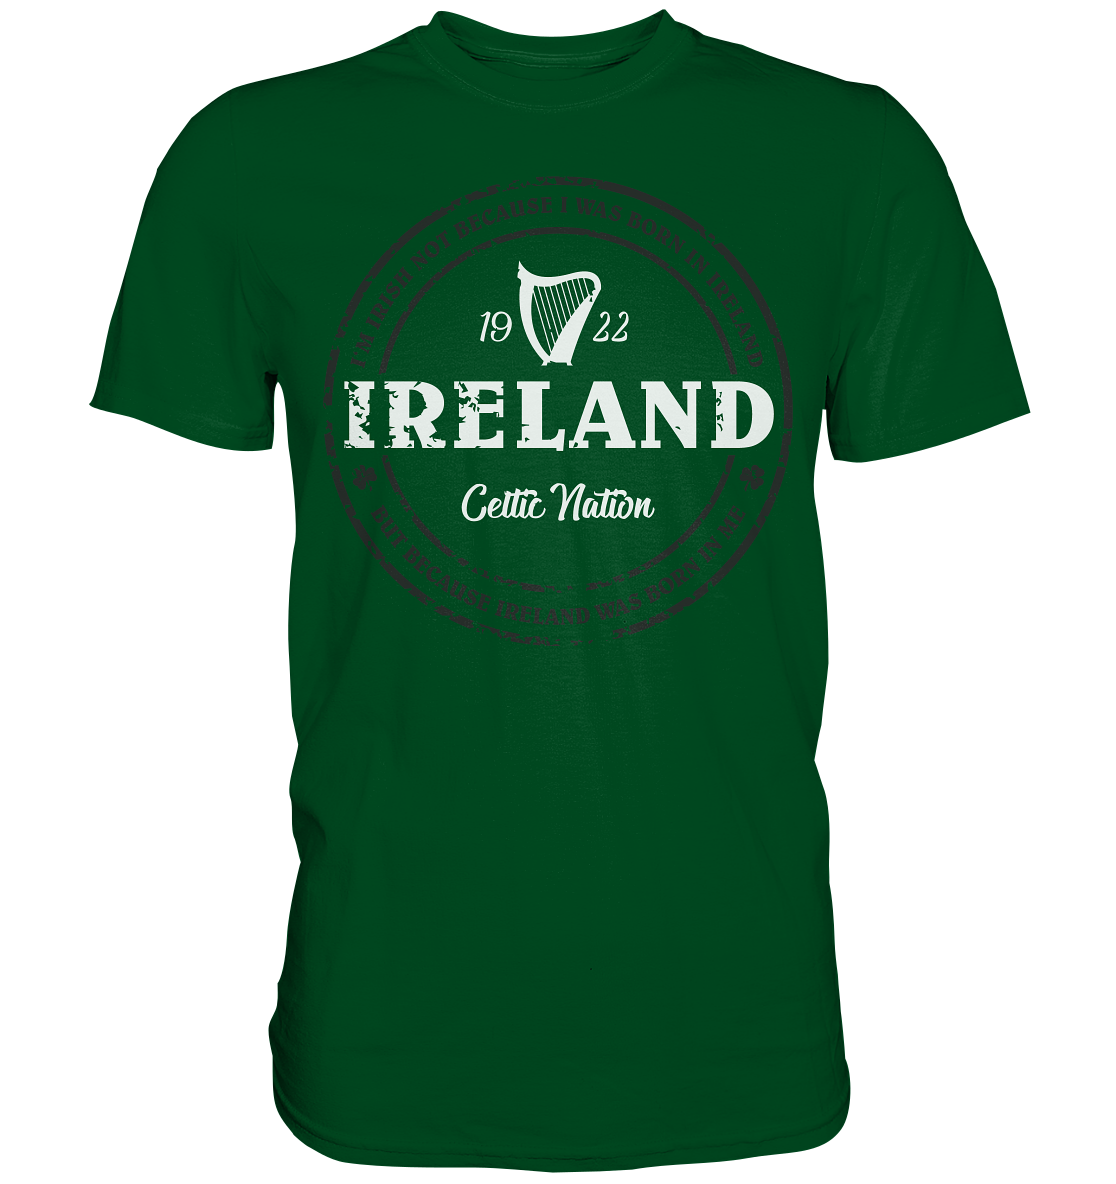 Ireland Was Born In Me - Premium Shirt